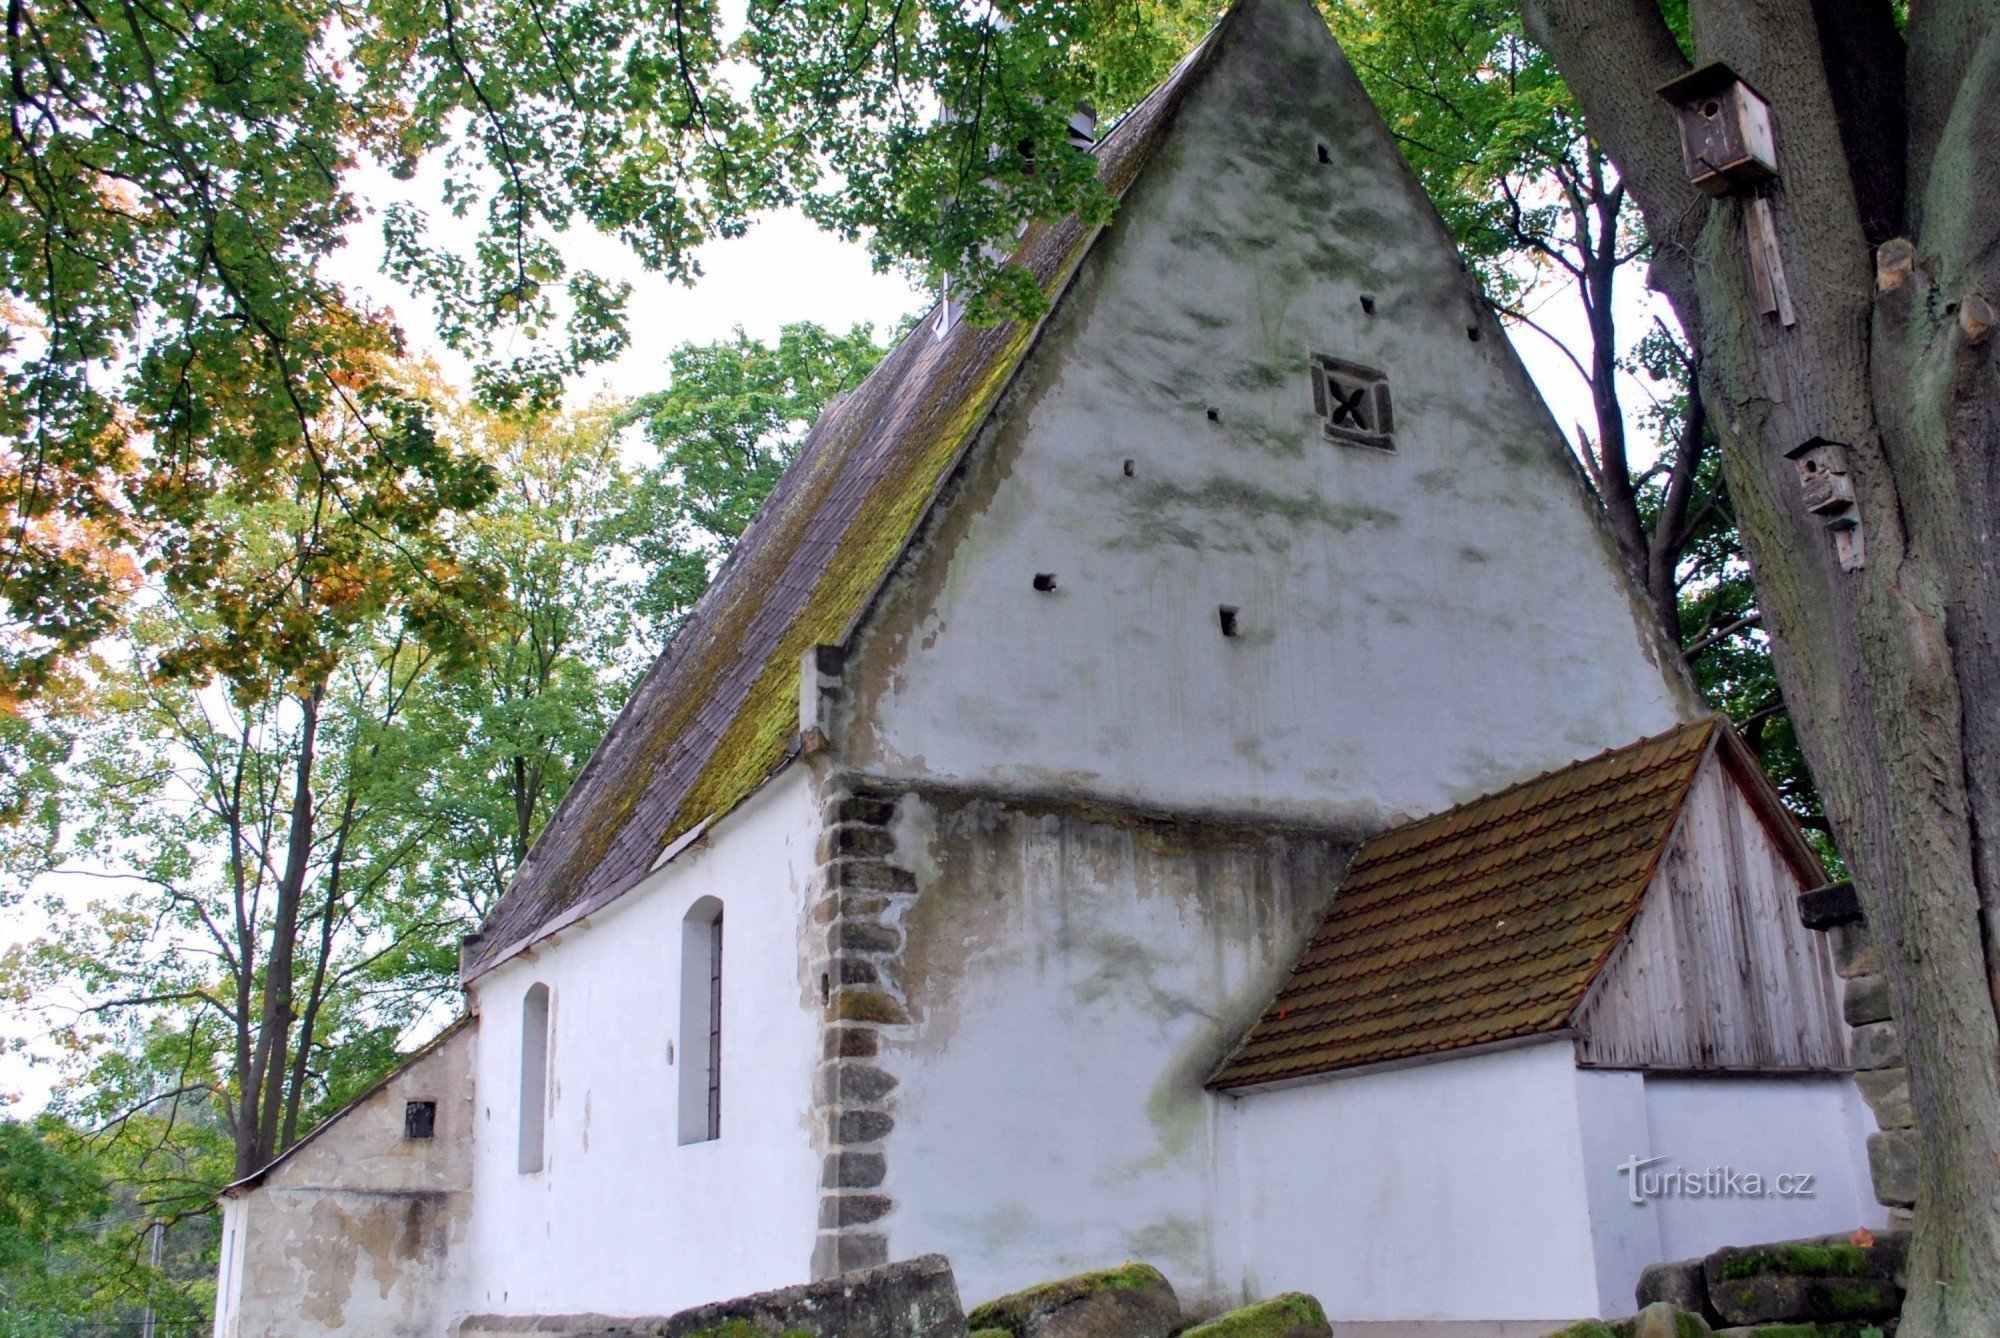 Hostíkovice - the oldest sacral building in Českolipsk